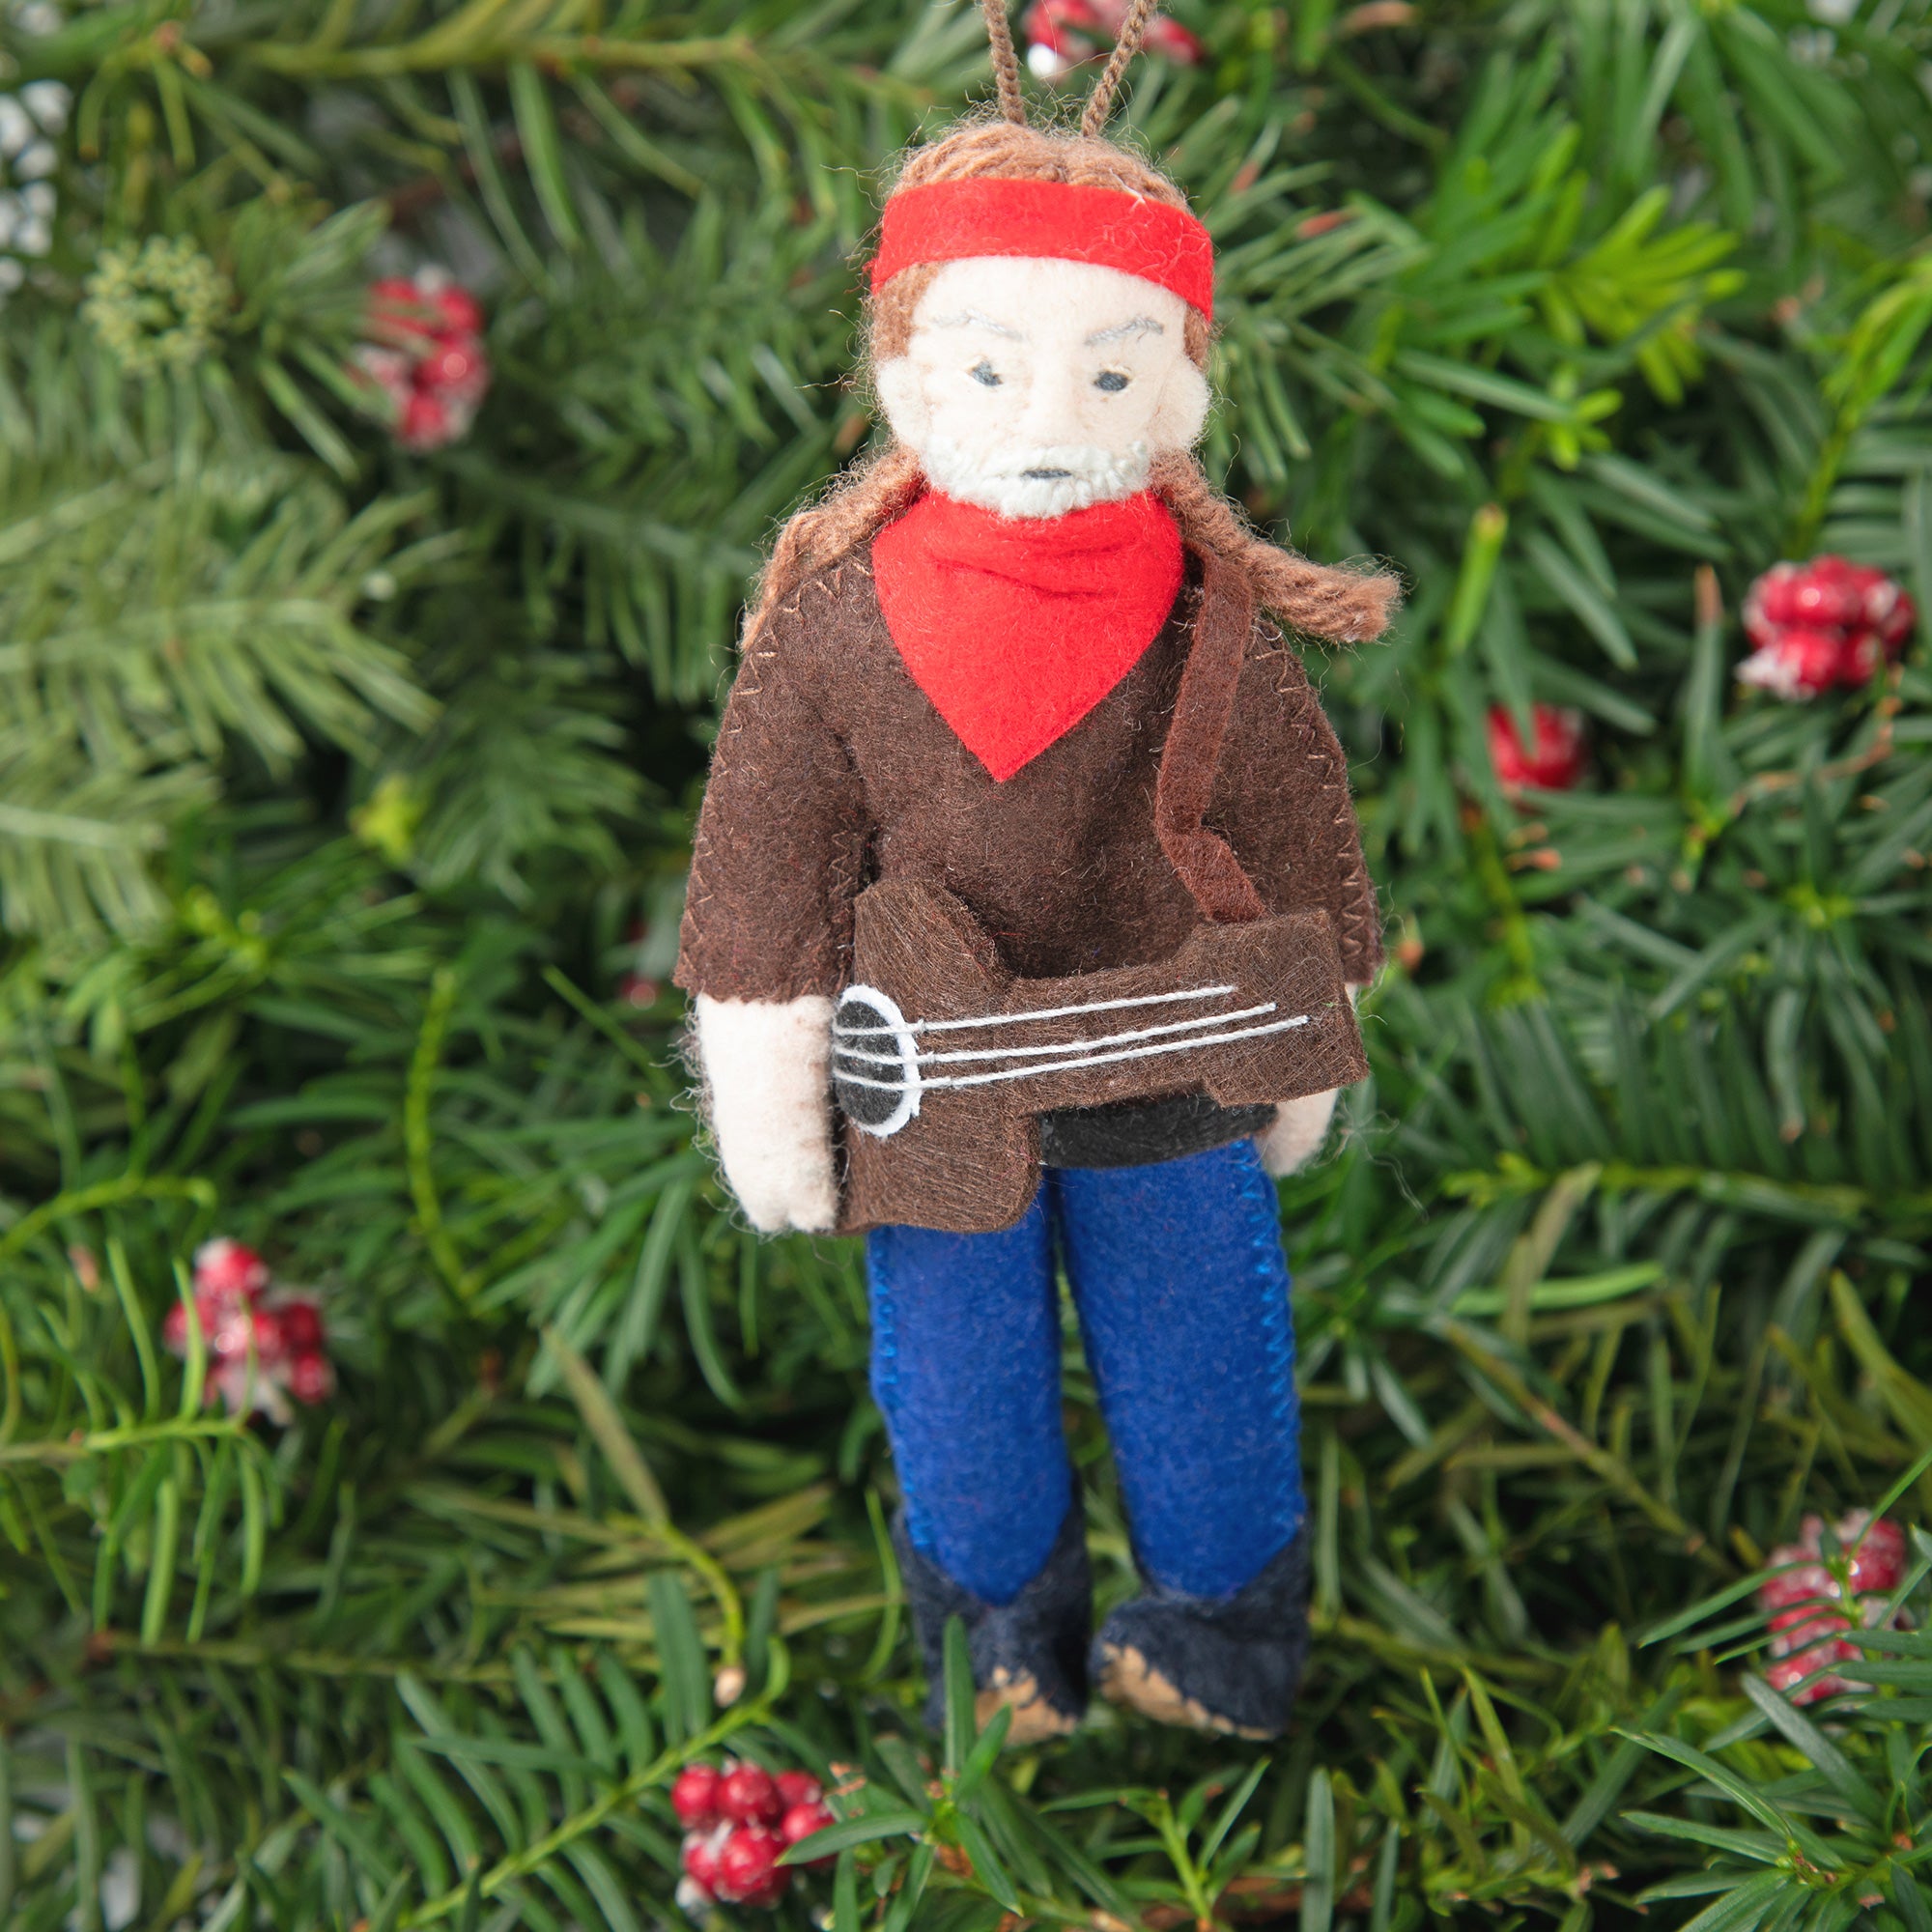 Handmade Musician Ornament - Willie Nelson